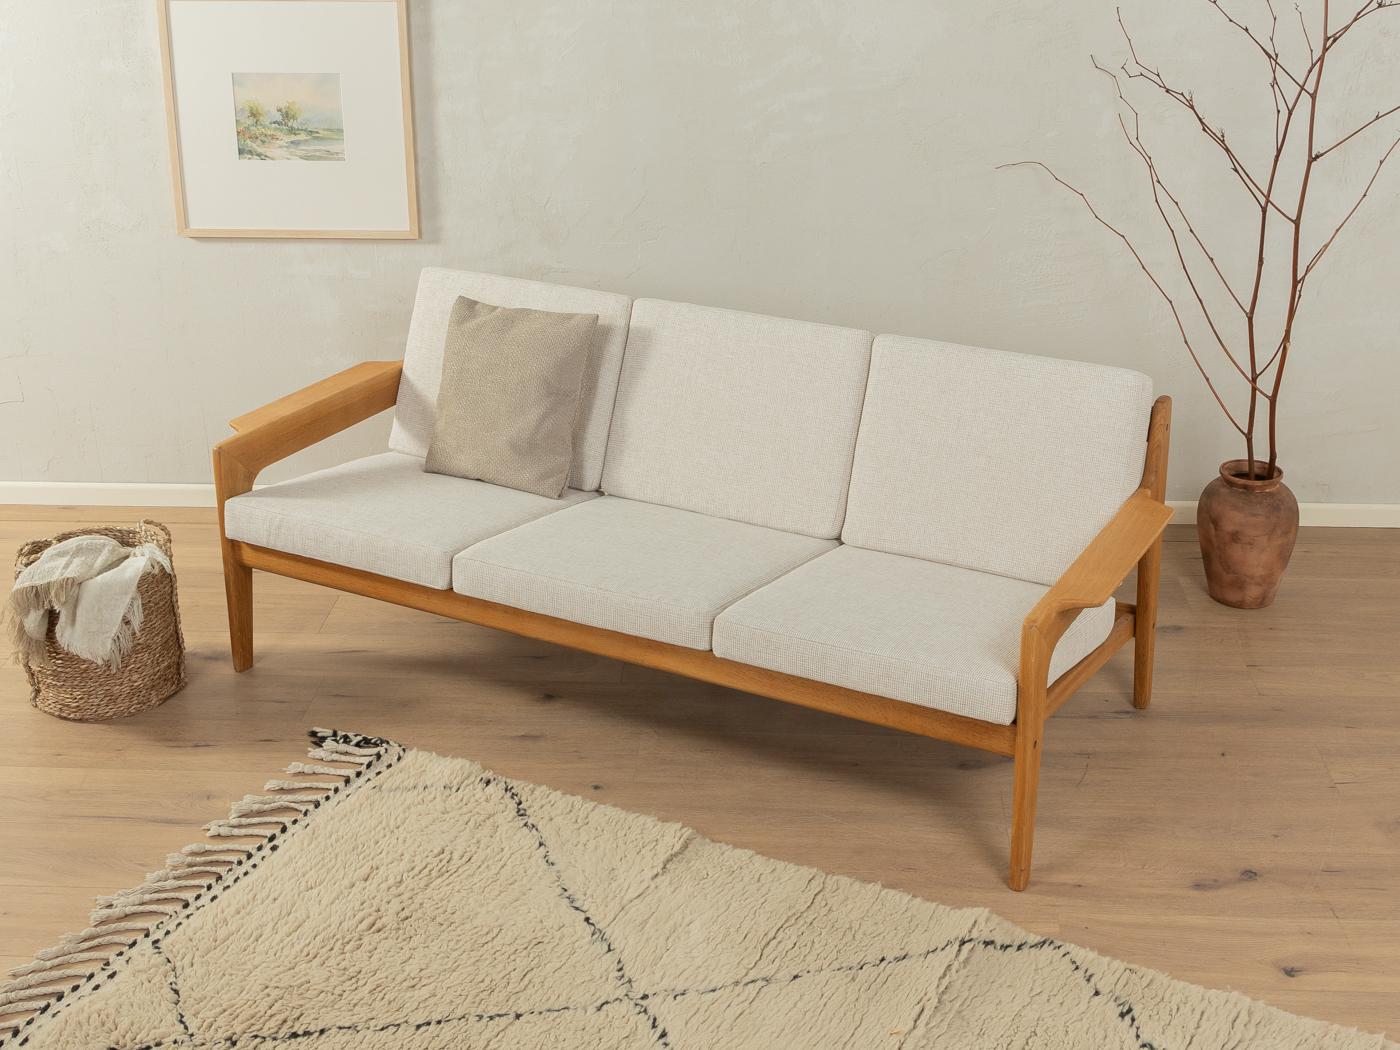 Klassisches 3-Sitzer-Sofa in Eiche aus den 1960er Jahren von Arne Wahl Iversen für Komfort. Das Sofa wurde neu gepolstert und mit einem hochwertigen Stoff in Beige bezogen.

Qualitätsmerkmale:
    vollendetes Design: perfekte Proportionen und